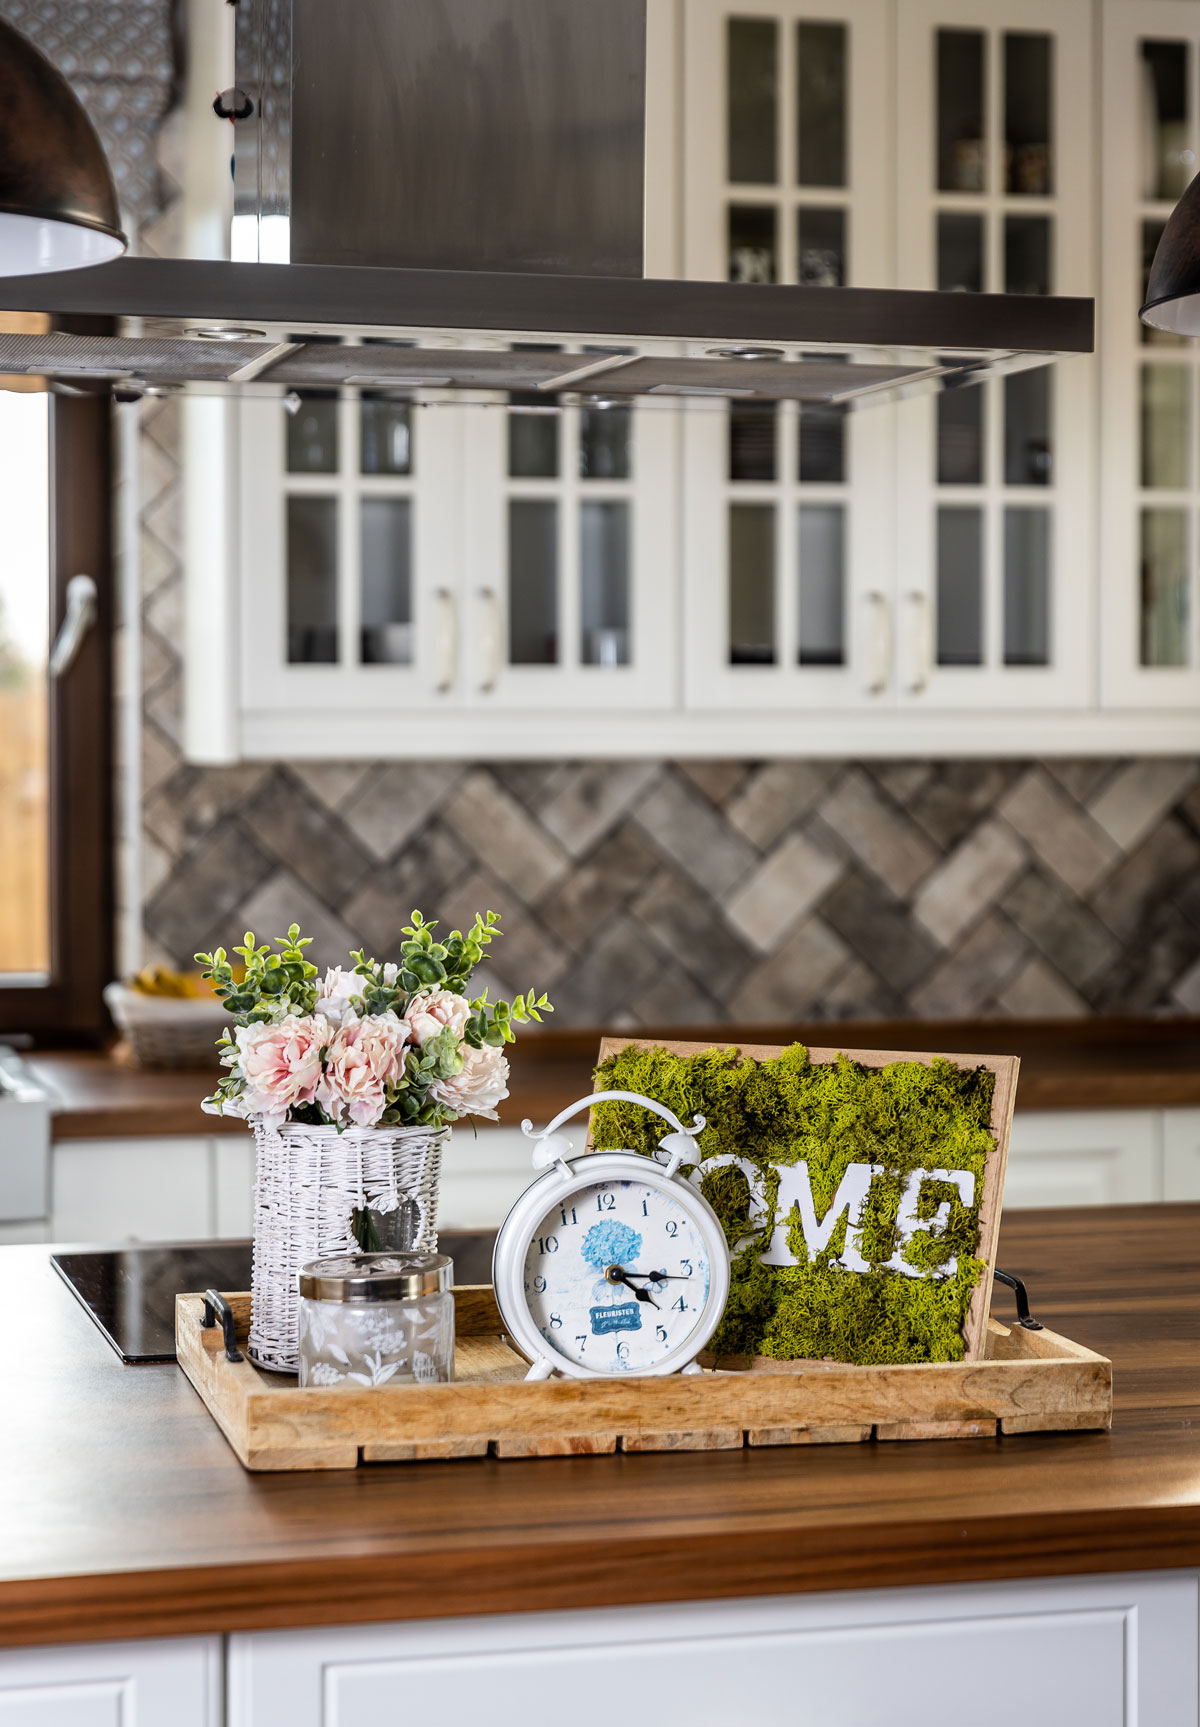 Kuchynská dekorácia z drevenej tácky, na ktorej je machový obraz s nápisom HOME, biely budík, sklenená nádoba a prútená nádoba s kvetmi.